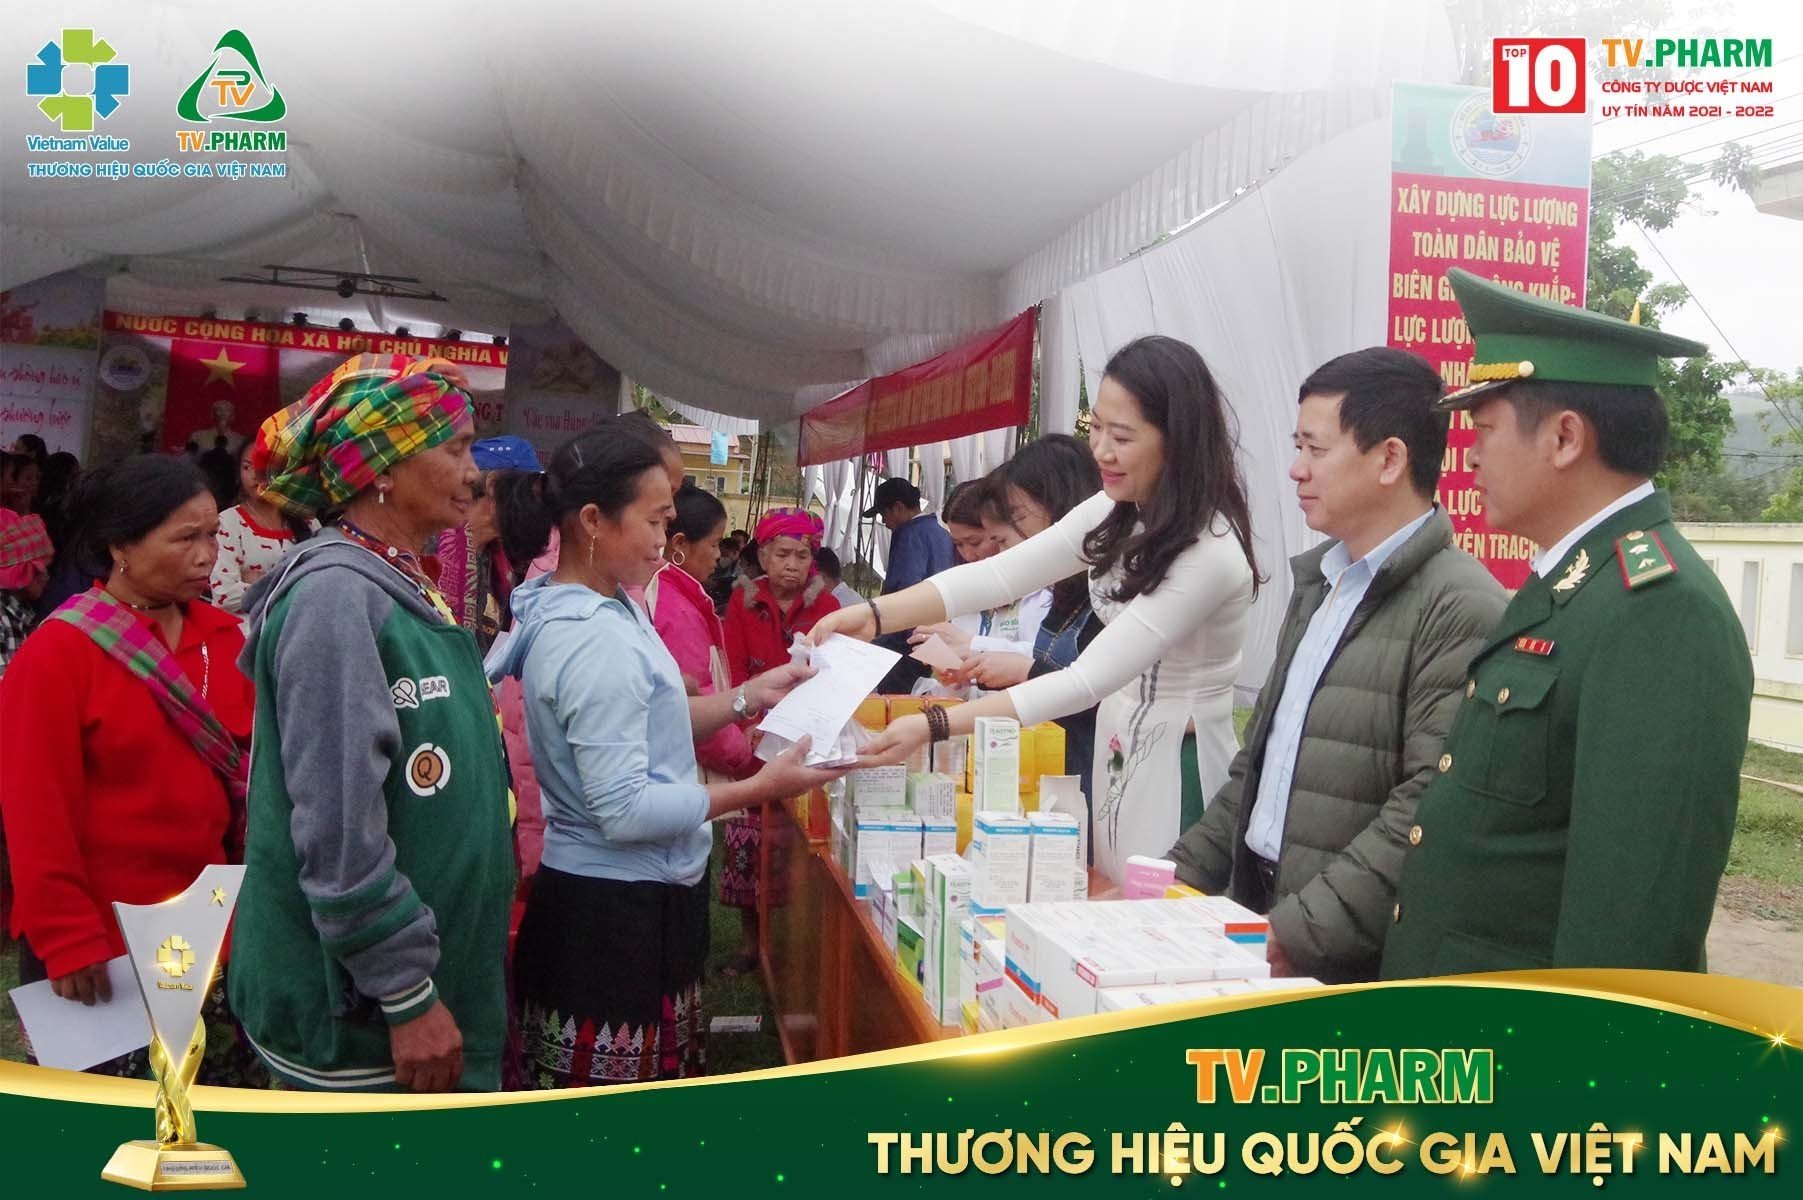 Dược phẩm TV.PHARM tổ chức khám bệnh, cấp phát thuốc miễn phí tại các tỉnh miền Trung